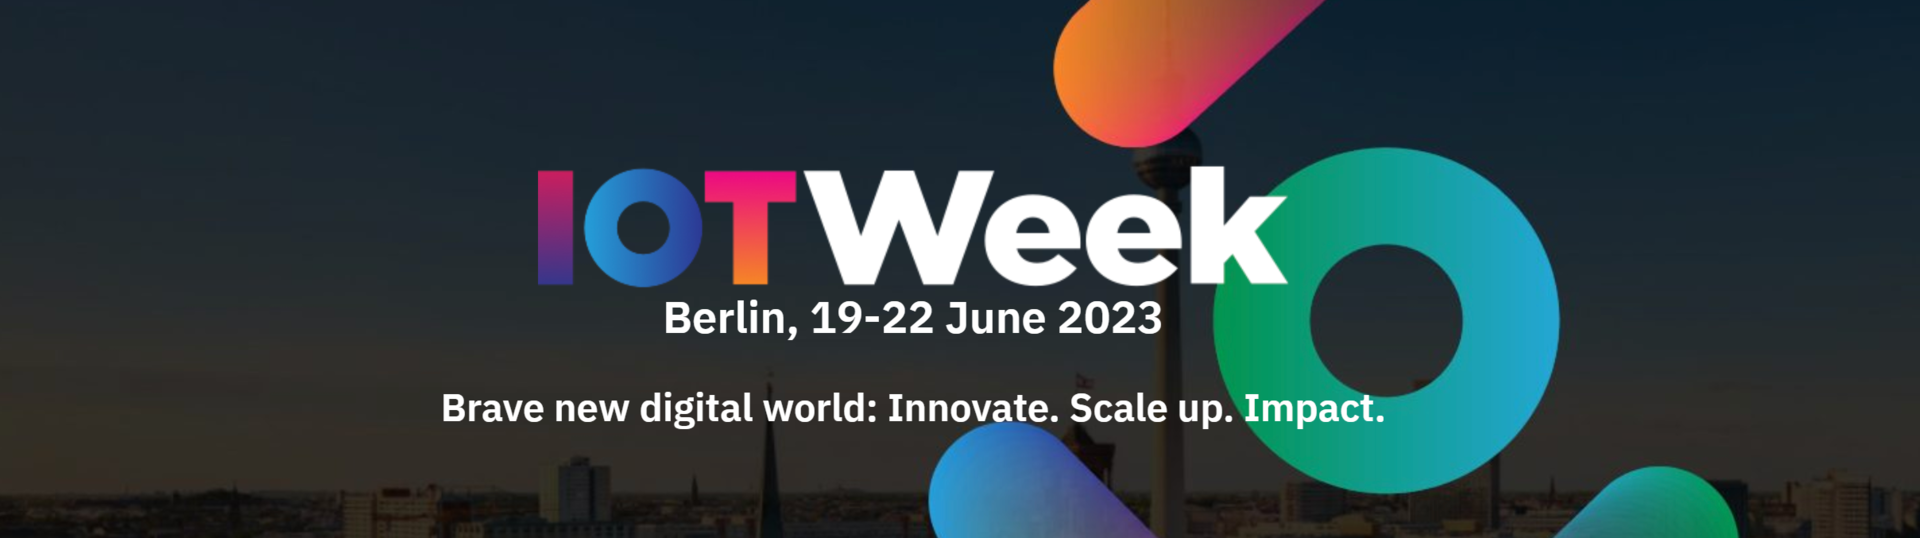 IoTWeek Berlin 2023